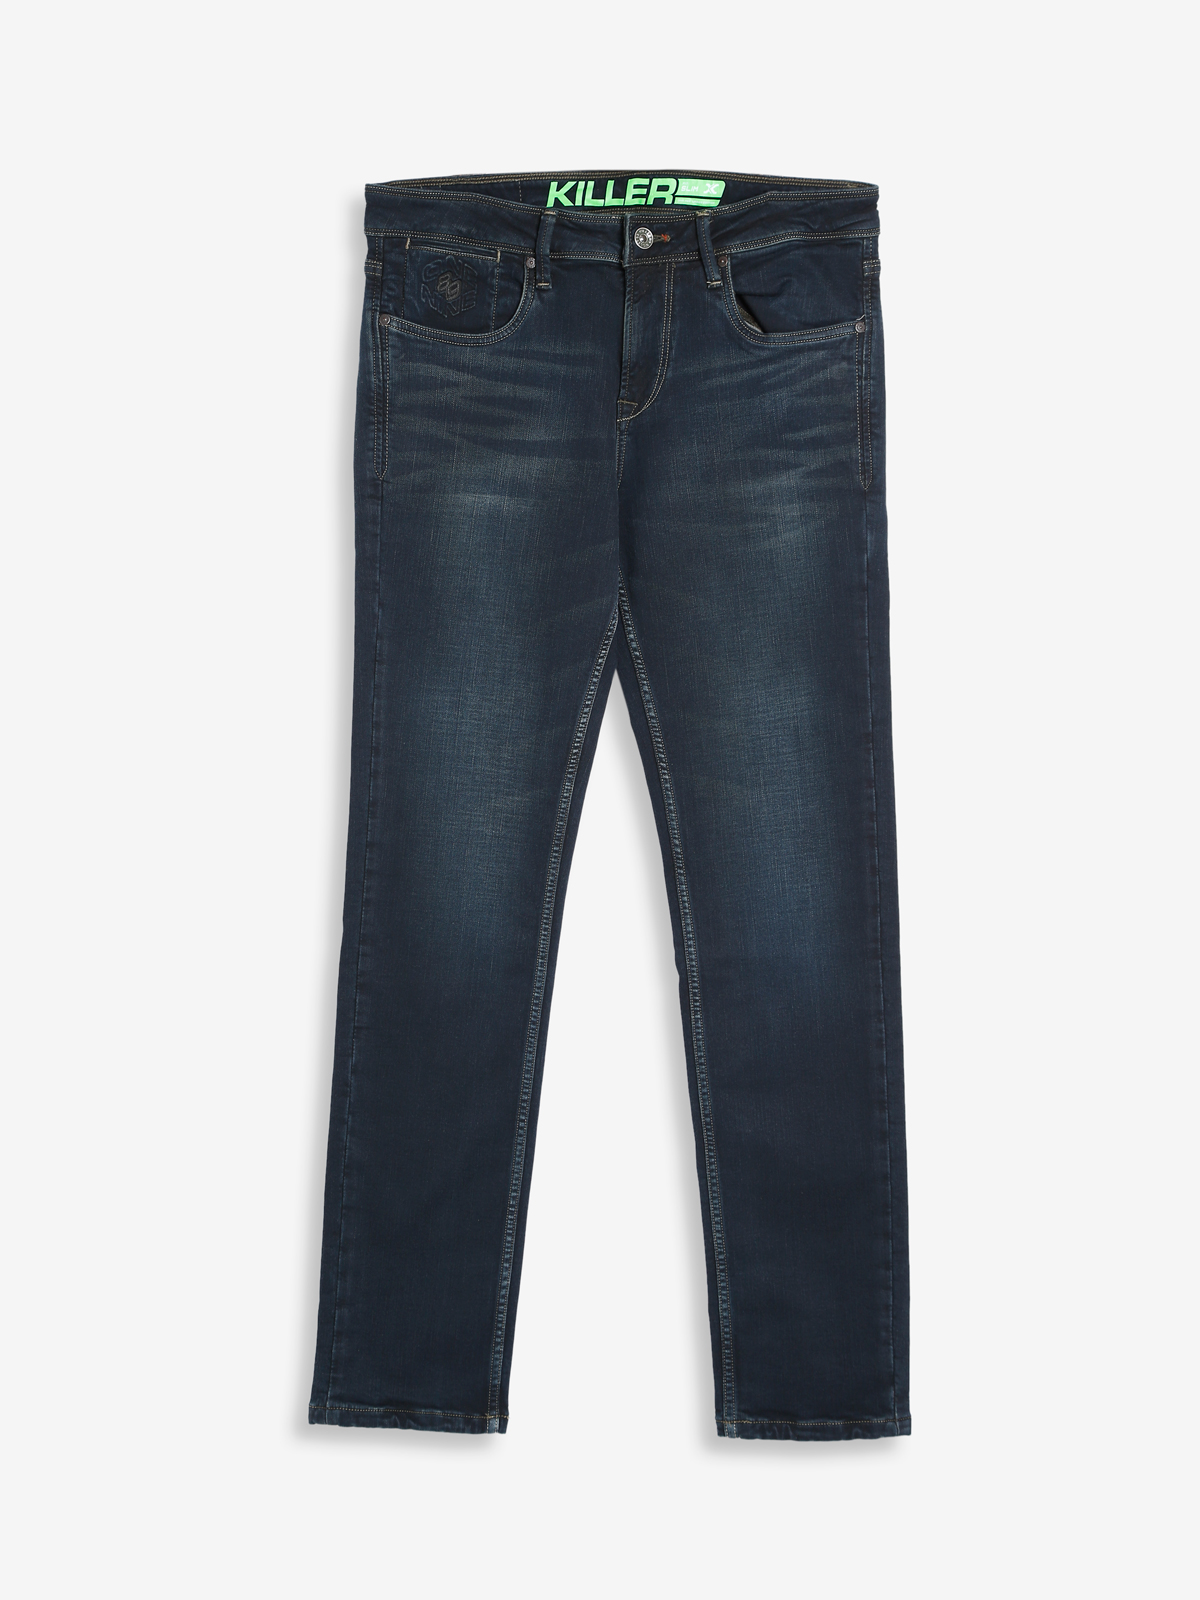 killer denim black slim fit jeans 170670321290237 slm (olv) 1